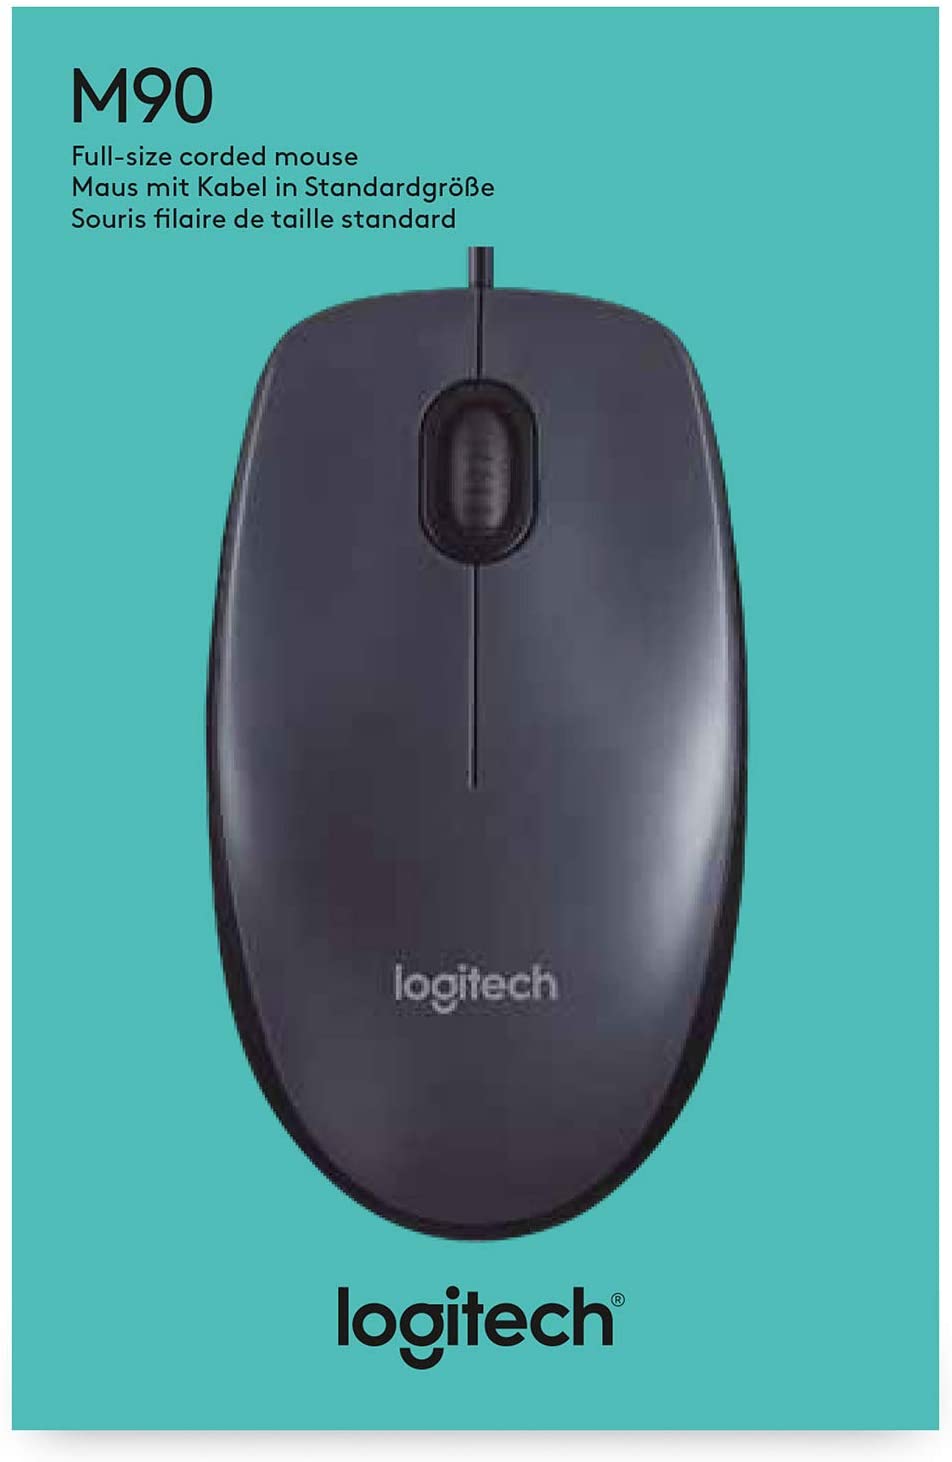 Logitech wireless keyboards in kenya, logitech keyboards in kenya, logitech dealers in kenya